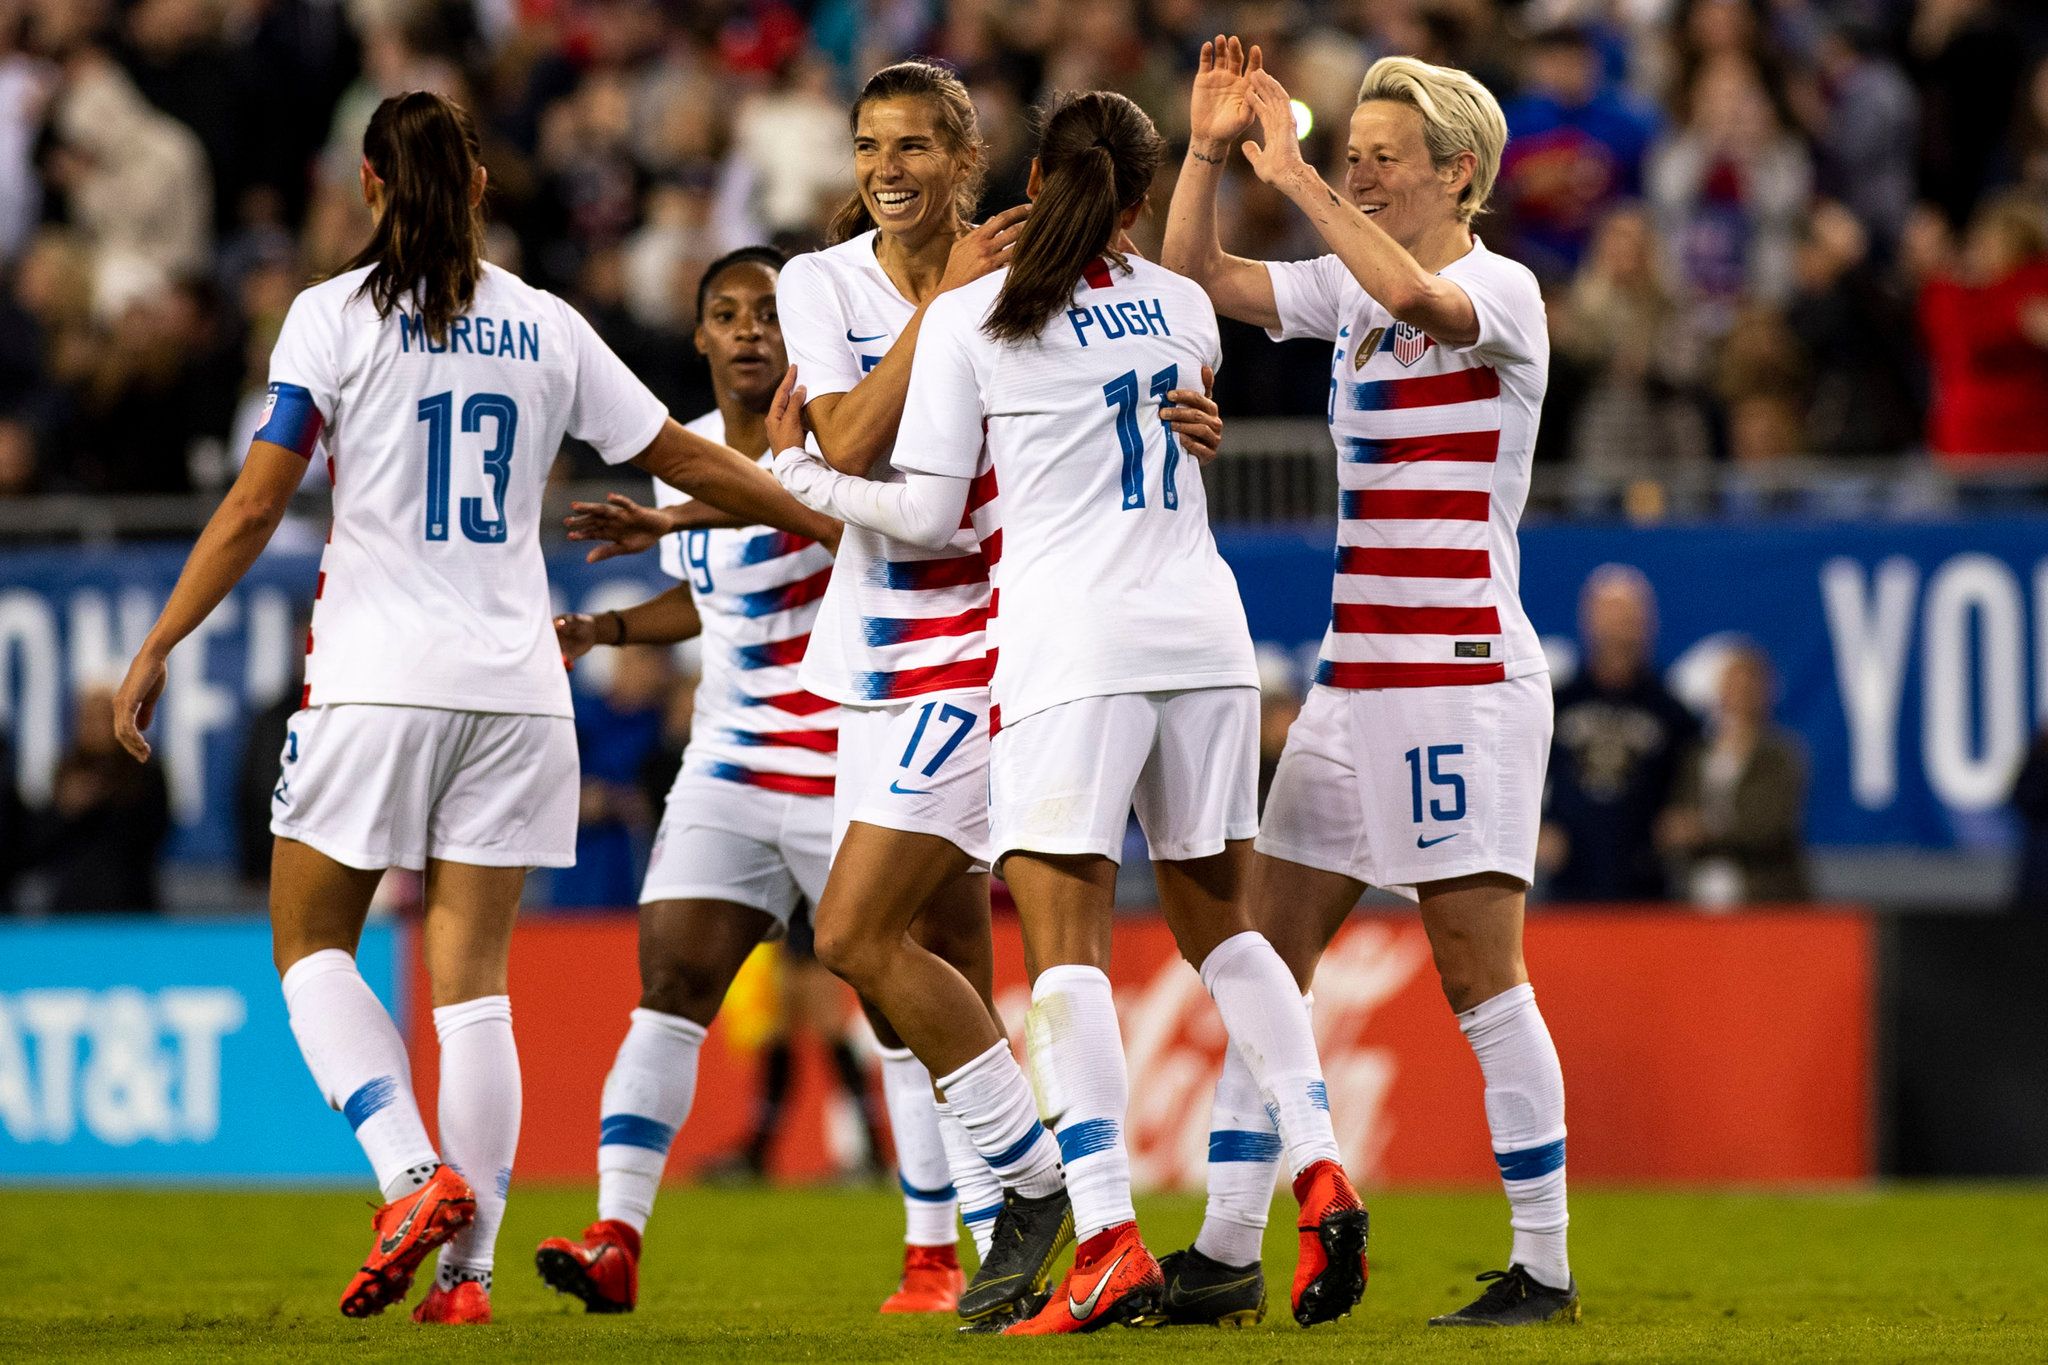 U.S. Women's Soccer Team Sues U.S. Soccer for Gender Discrimination